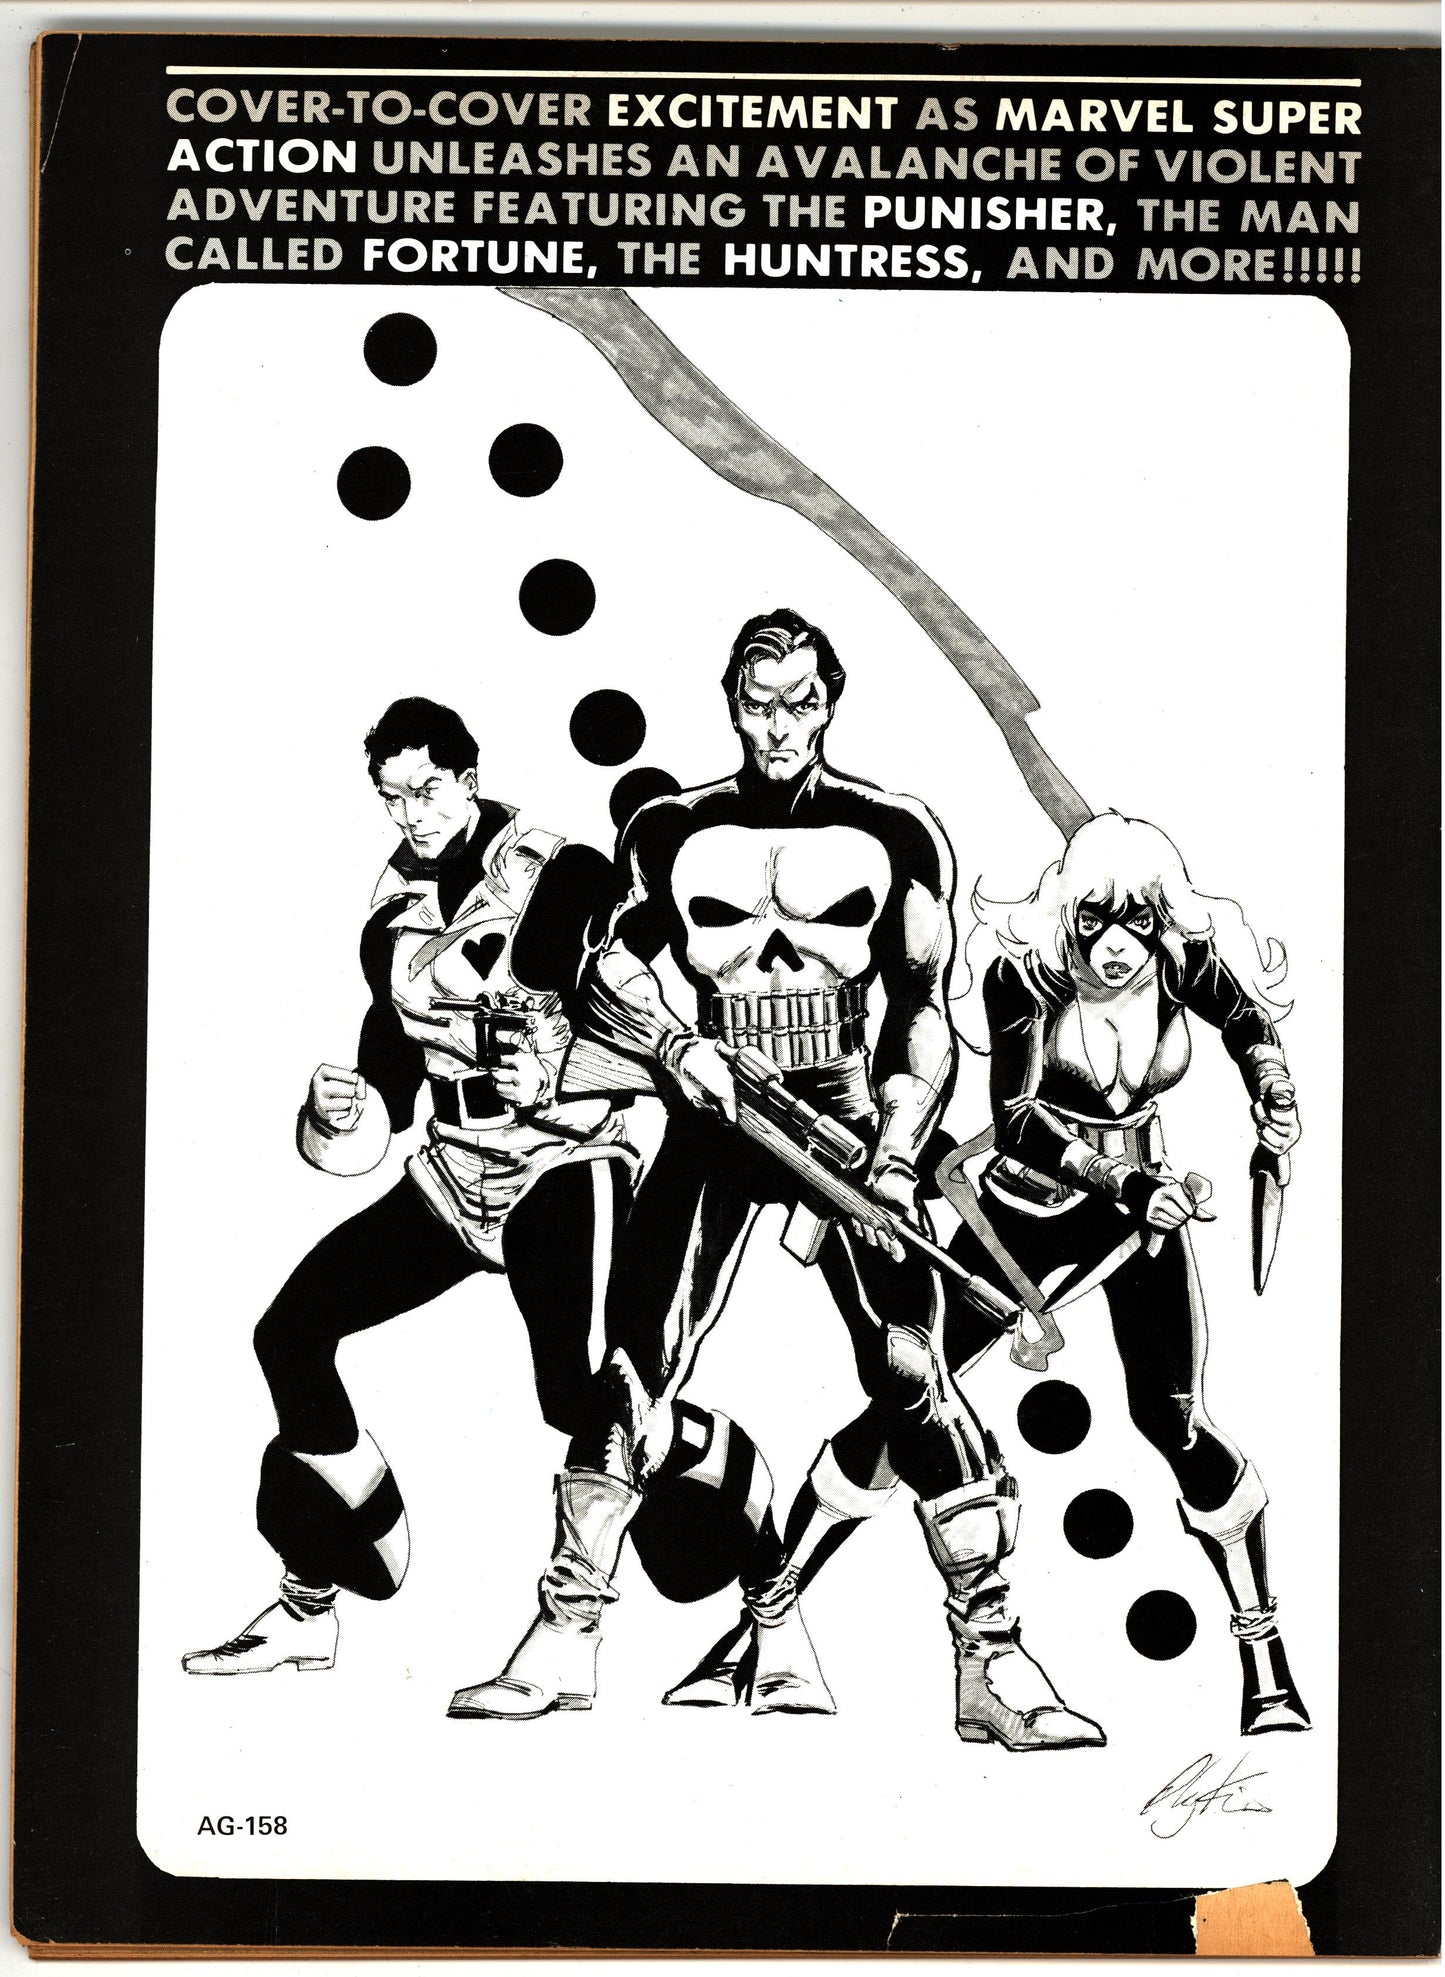 Marvel Super Action (1976) # 1